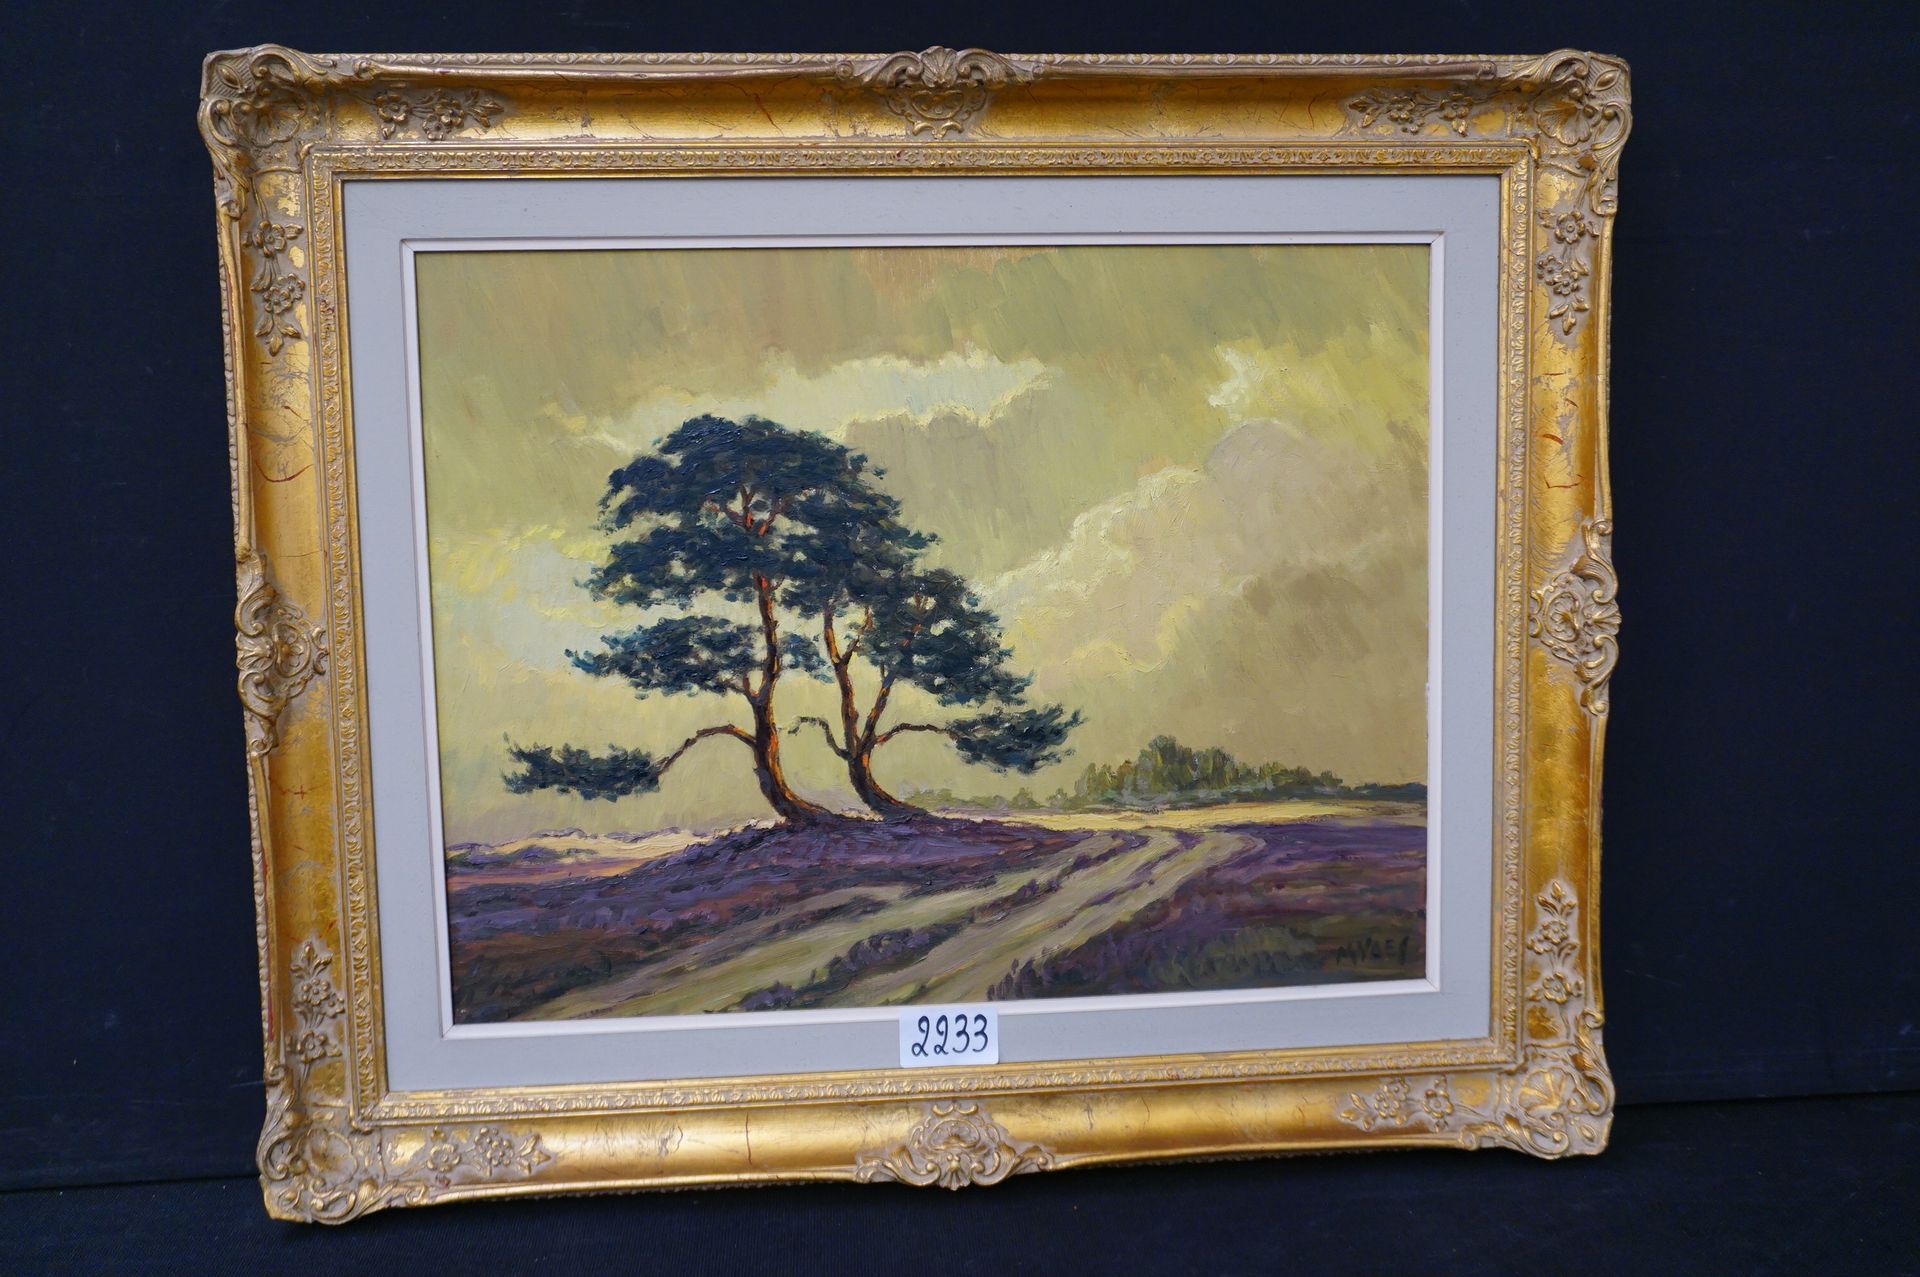 M. VAES "Paisaje de brezo" - Óleo sobre lienzo - Firmado - 50 x 65 cm